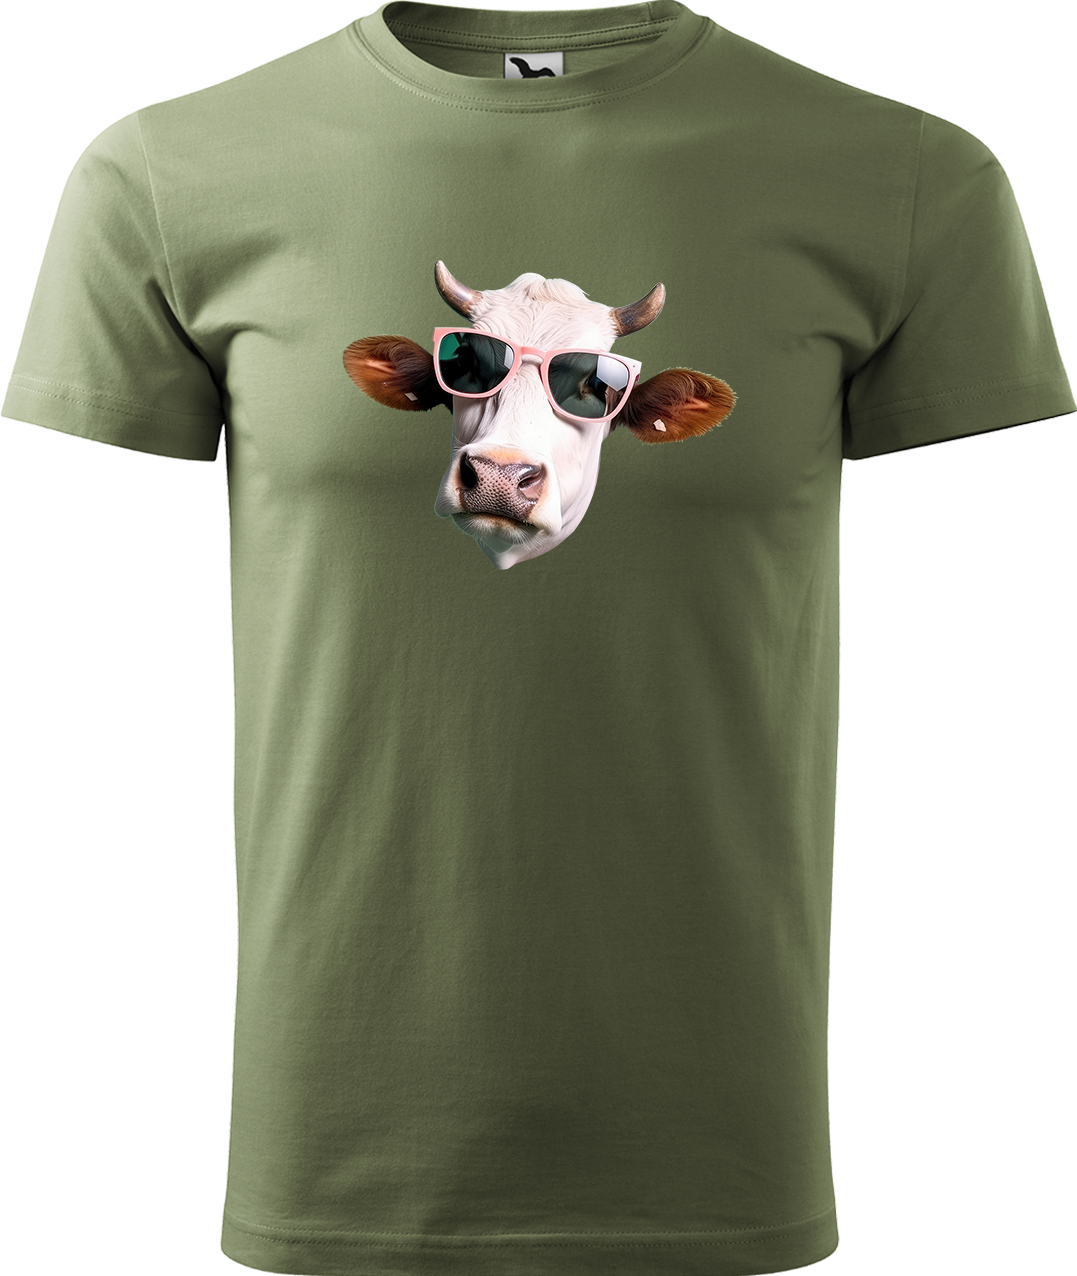 Pánské tričko s krávou - Kráva v brýlích Velikost: 4XL, Barva: Světlá khaki (28), Střih: pánský